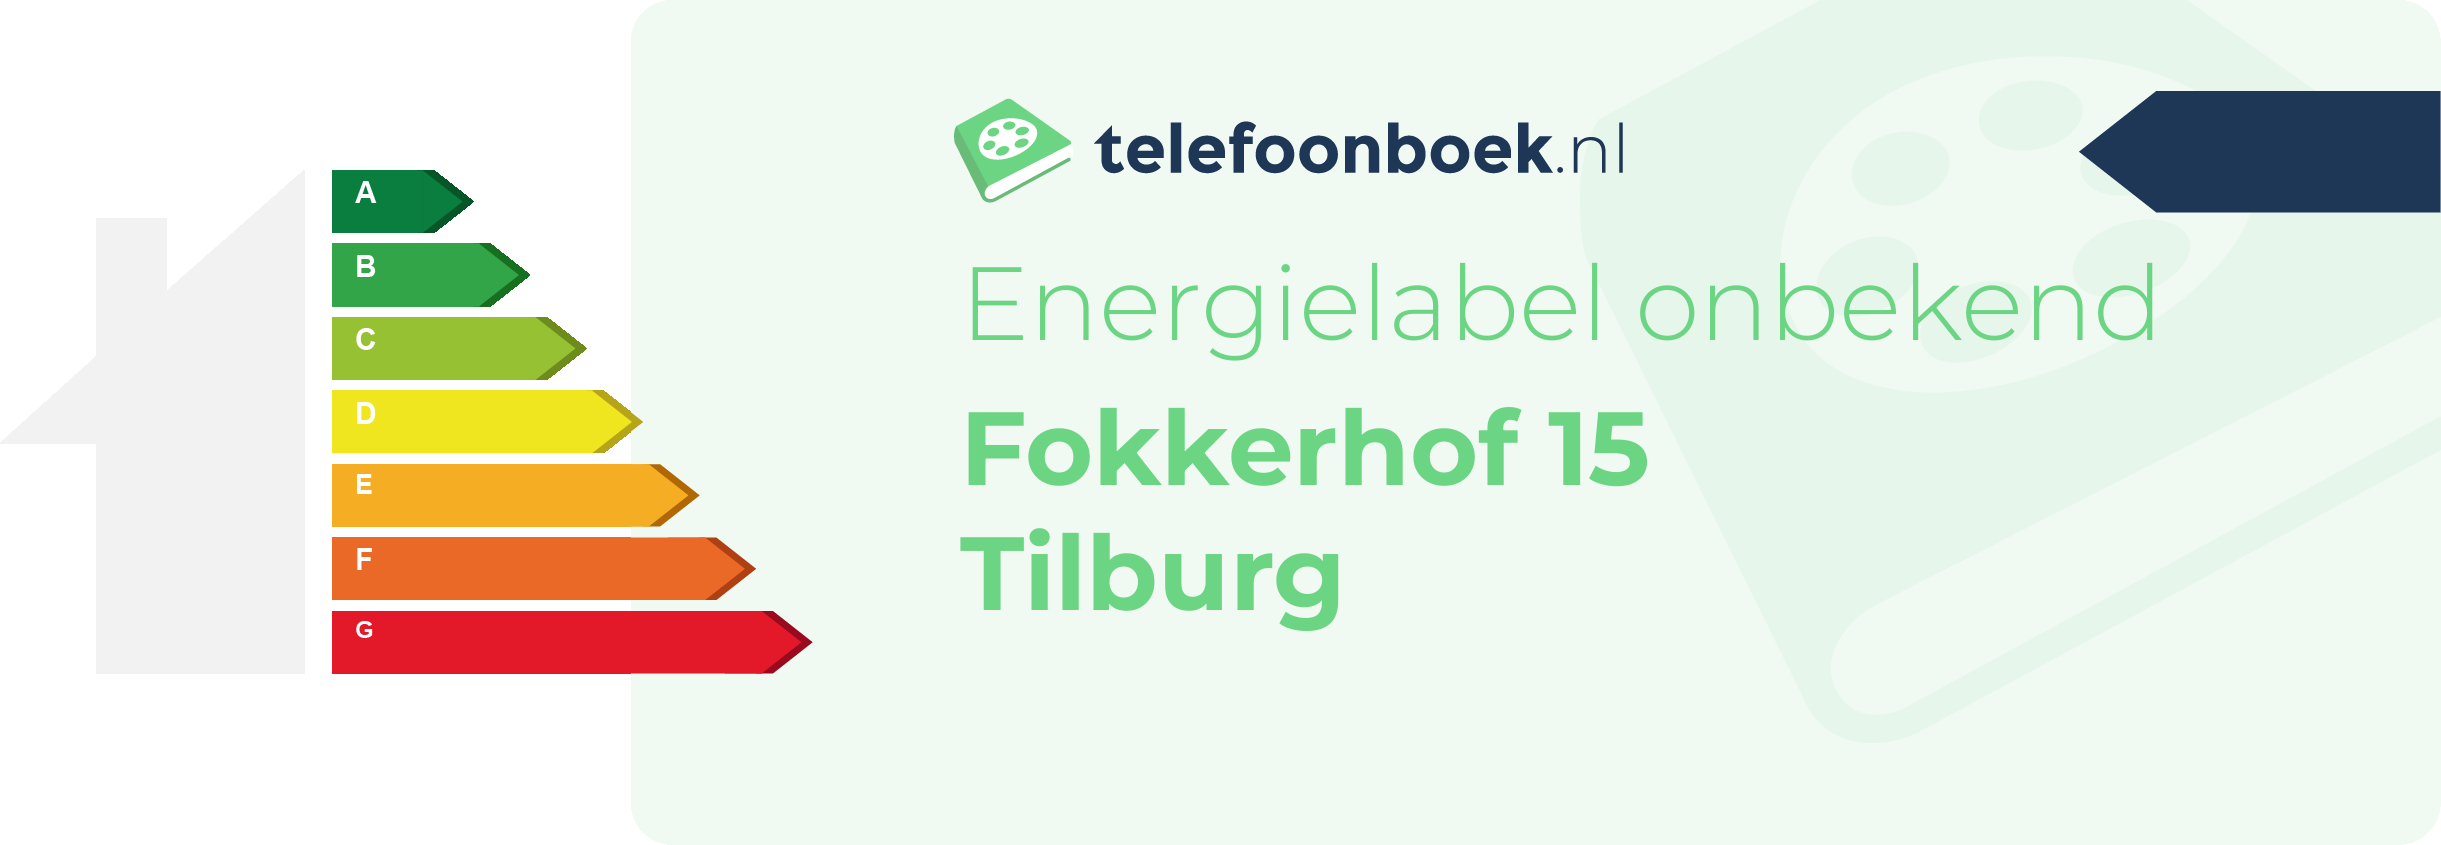 Energielabel Fokkerhof 15 Tilburg